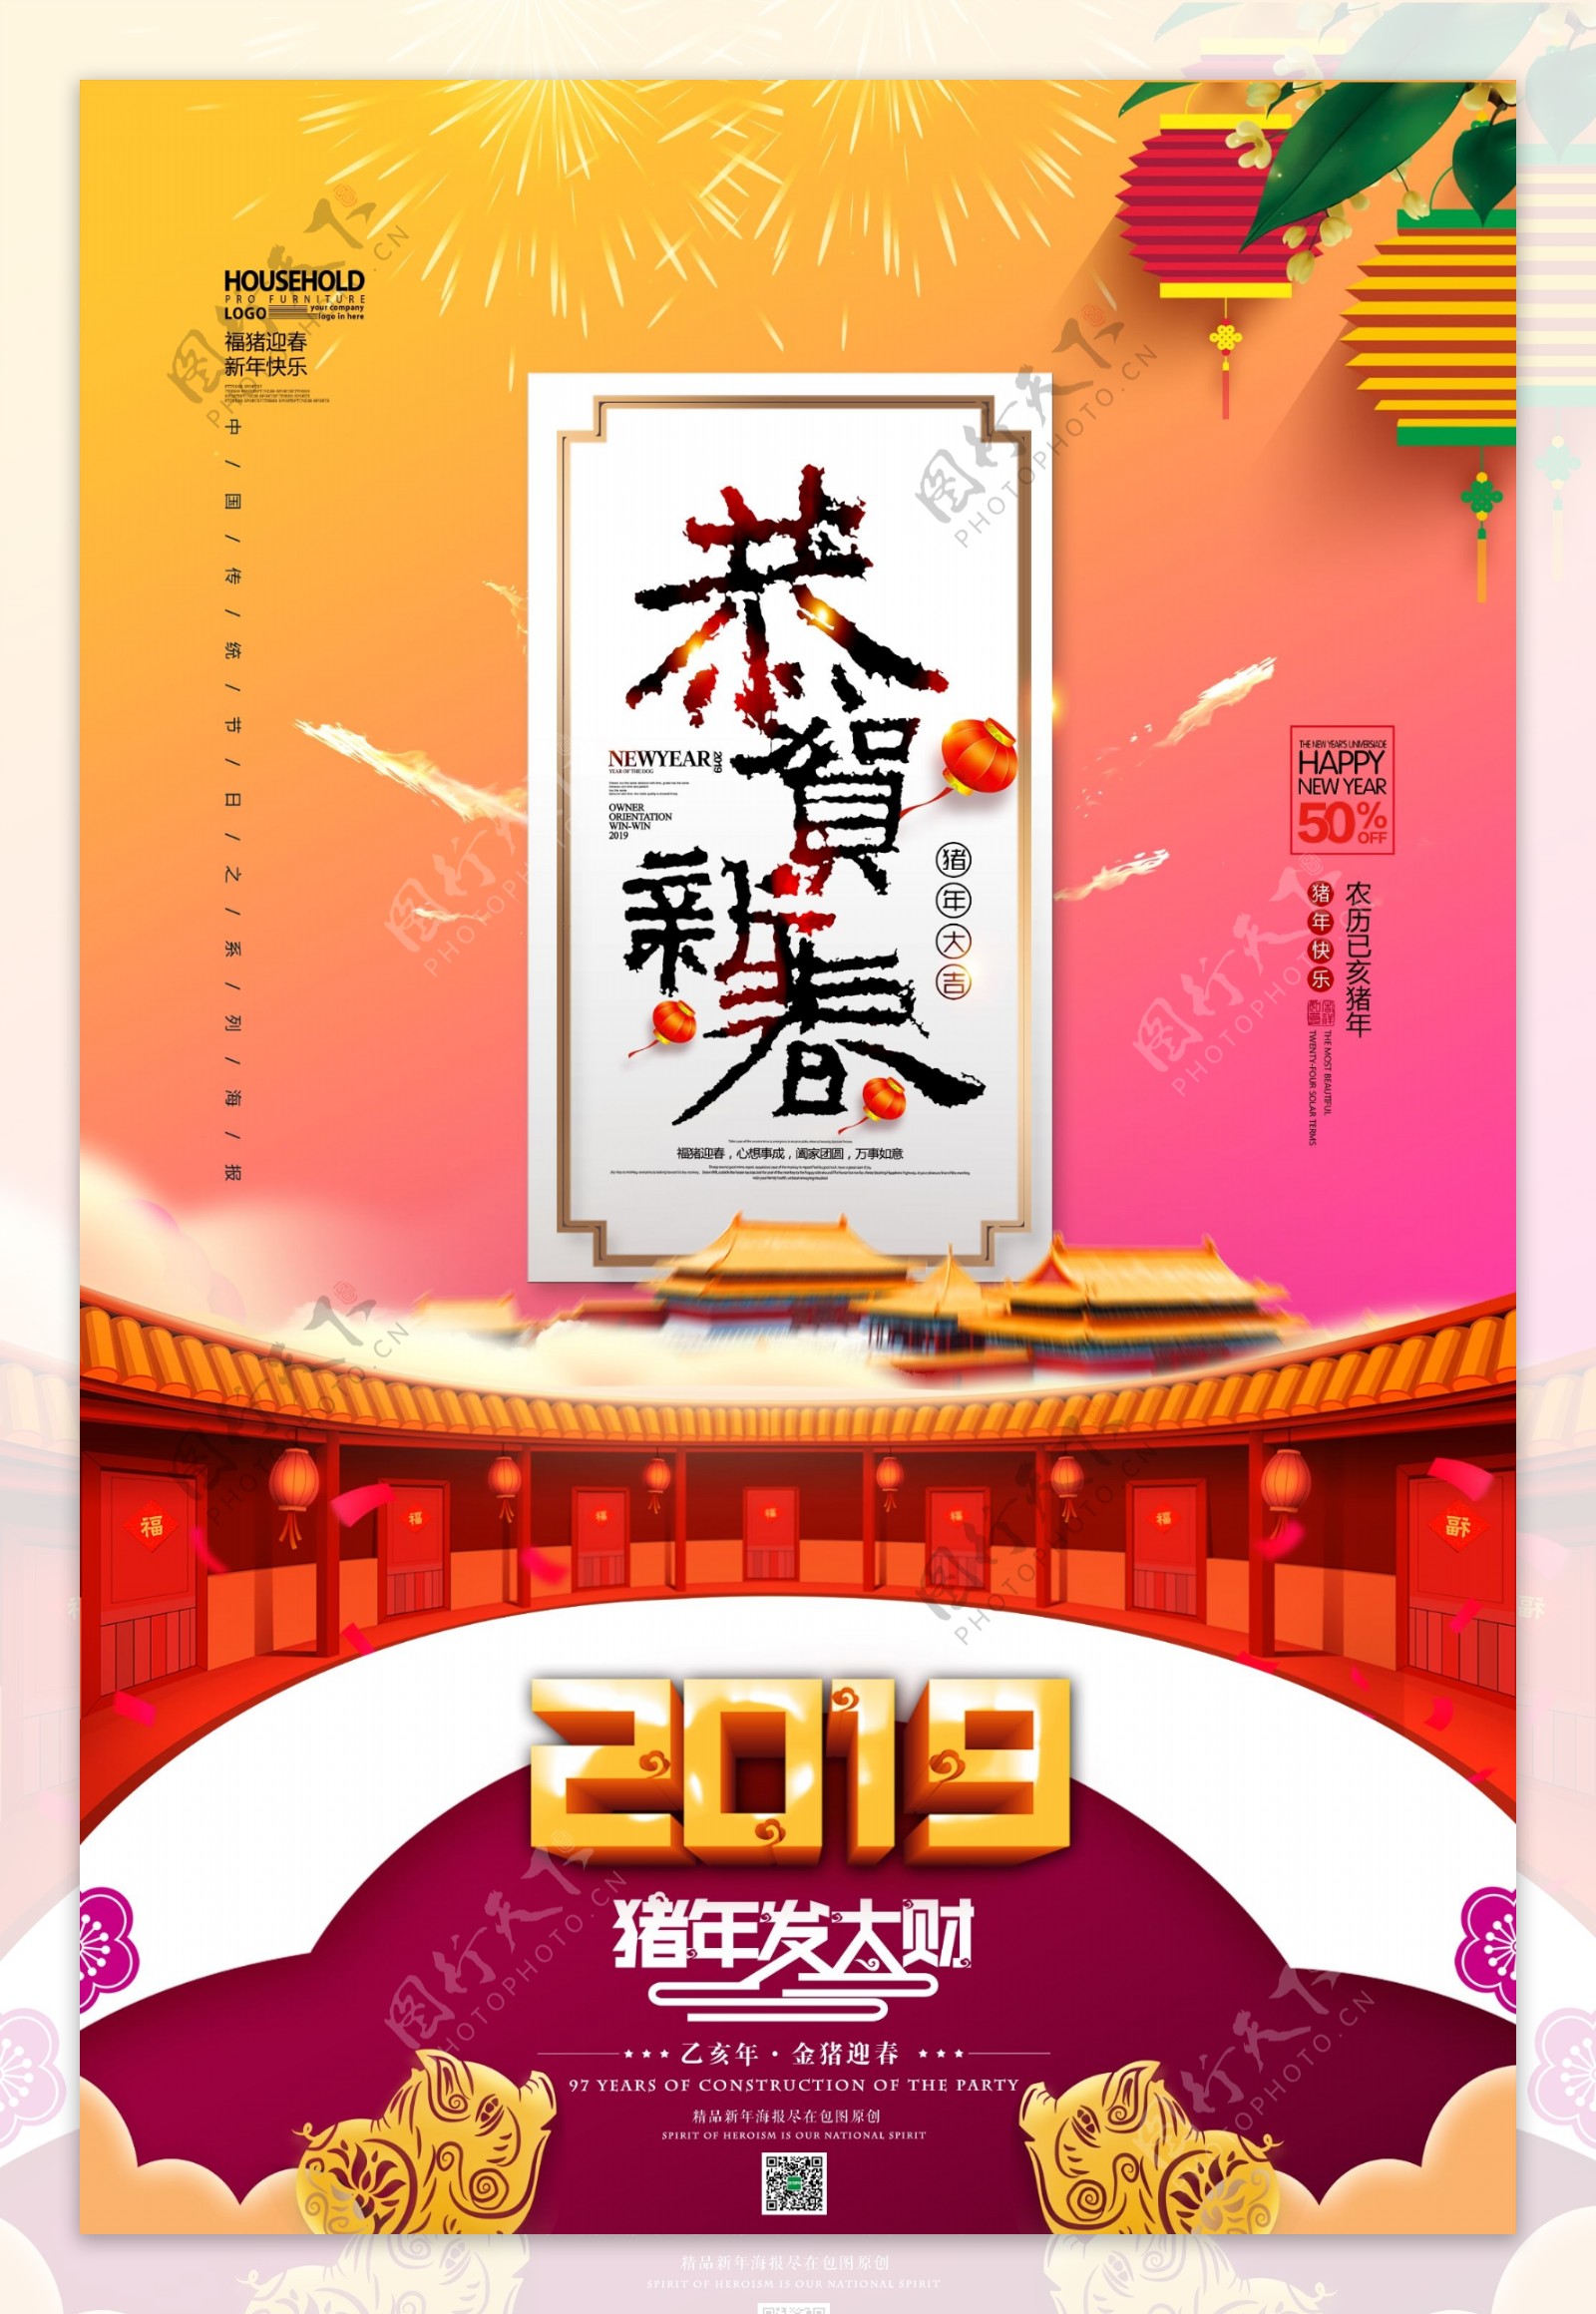 2019年恭贺新春喜迎新年节日海报模版.psd